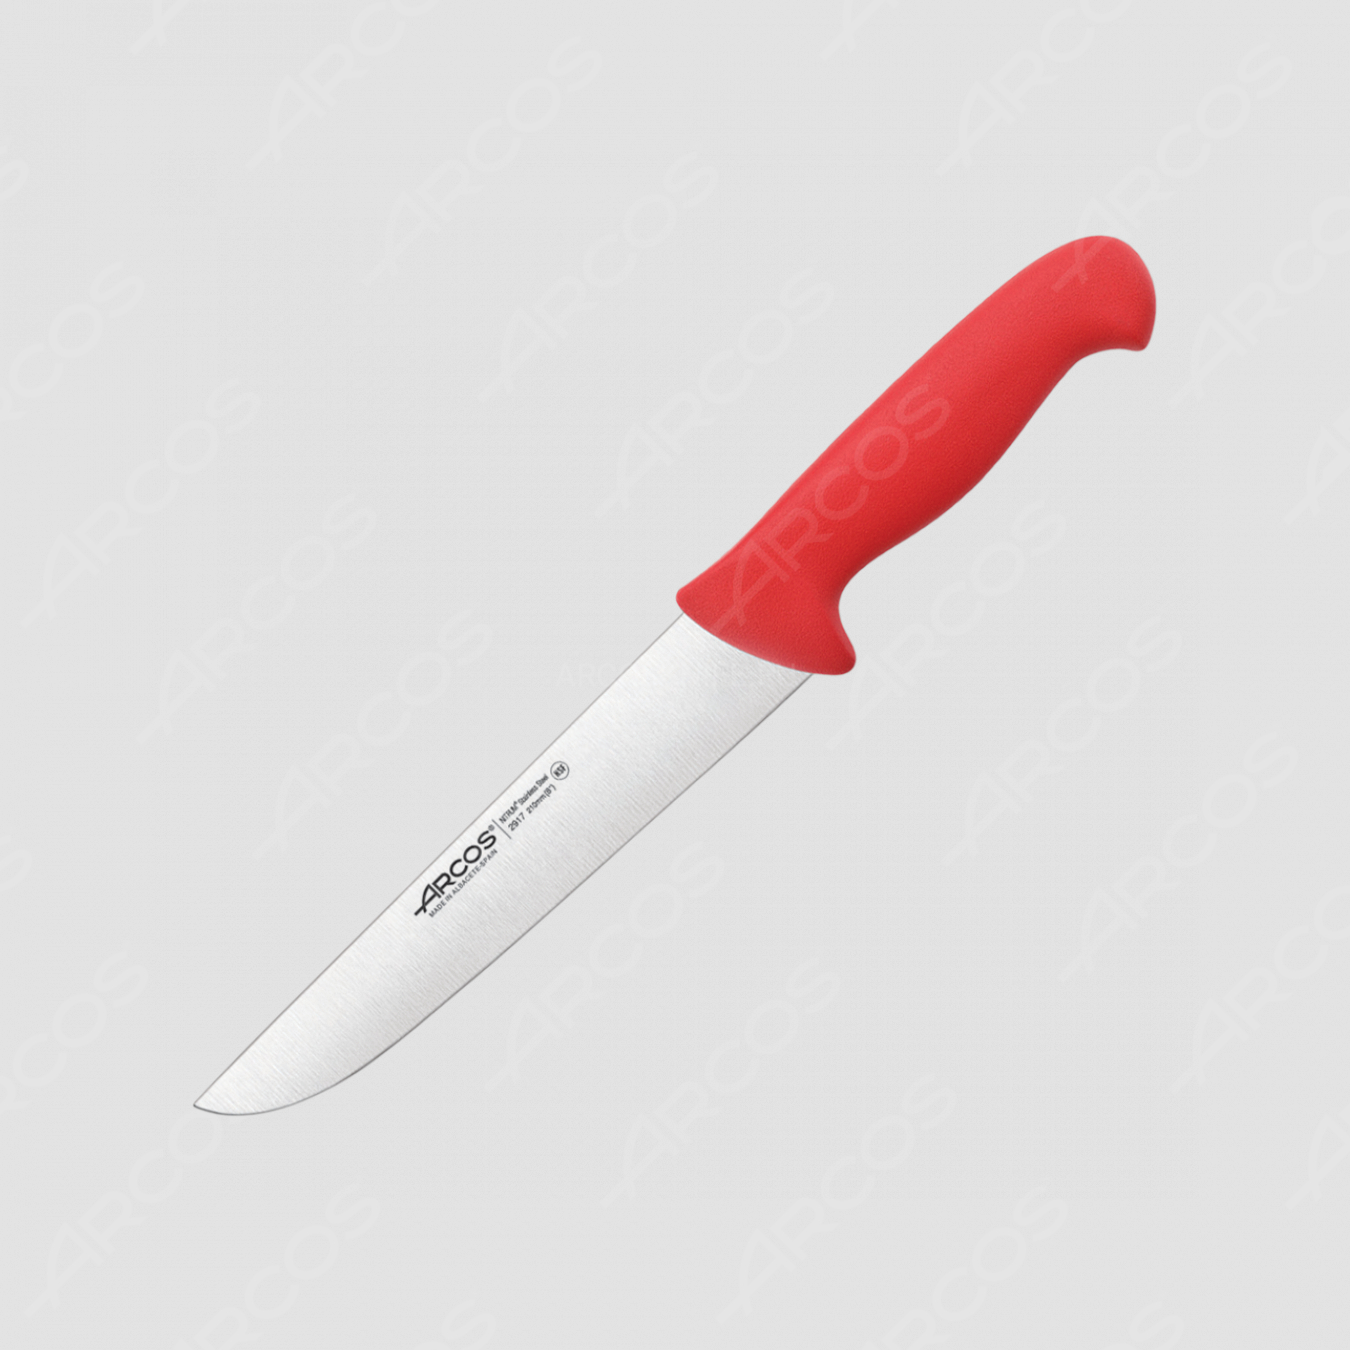 Нож кухонный для разделки 21 см, рукоять - красная, серия 2900, ARCOS, Испания